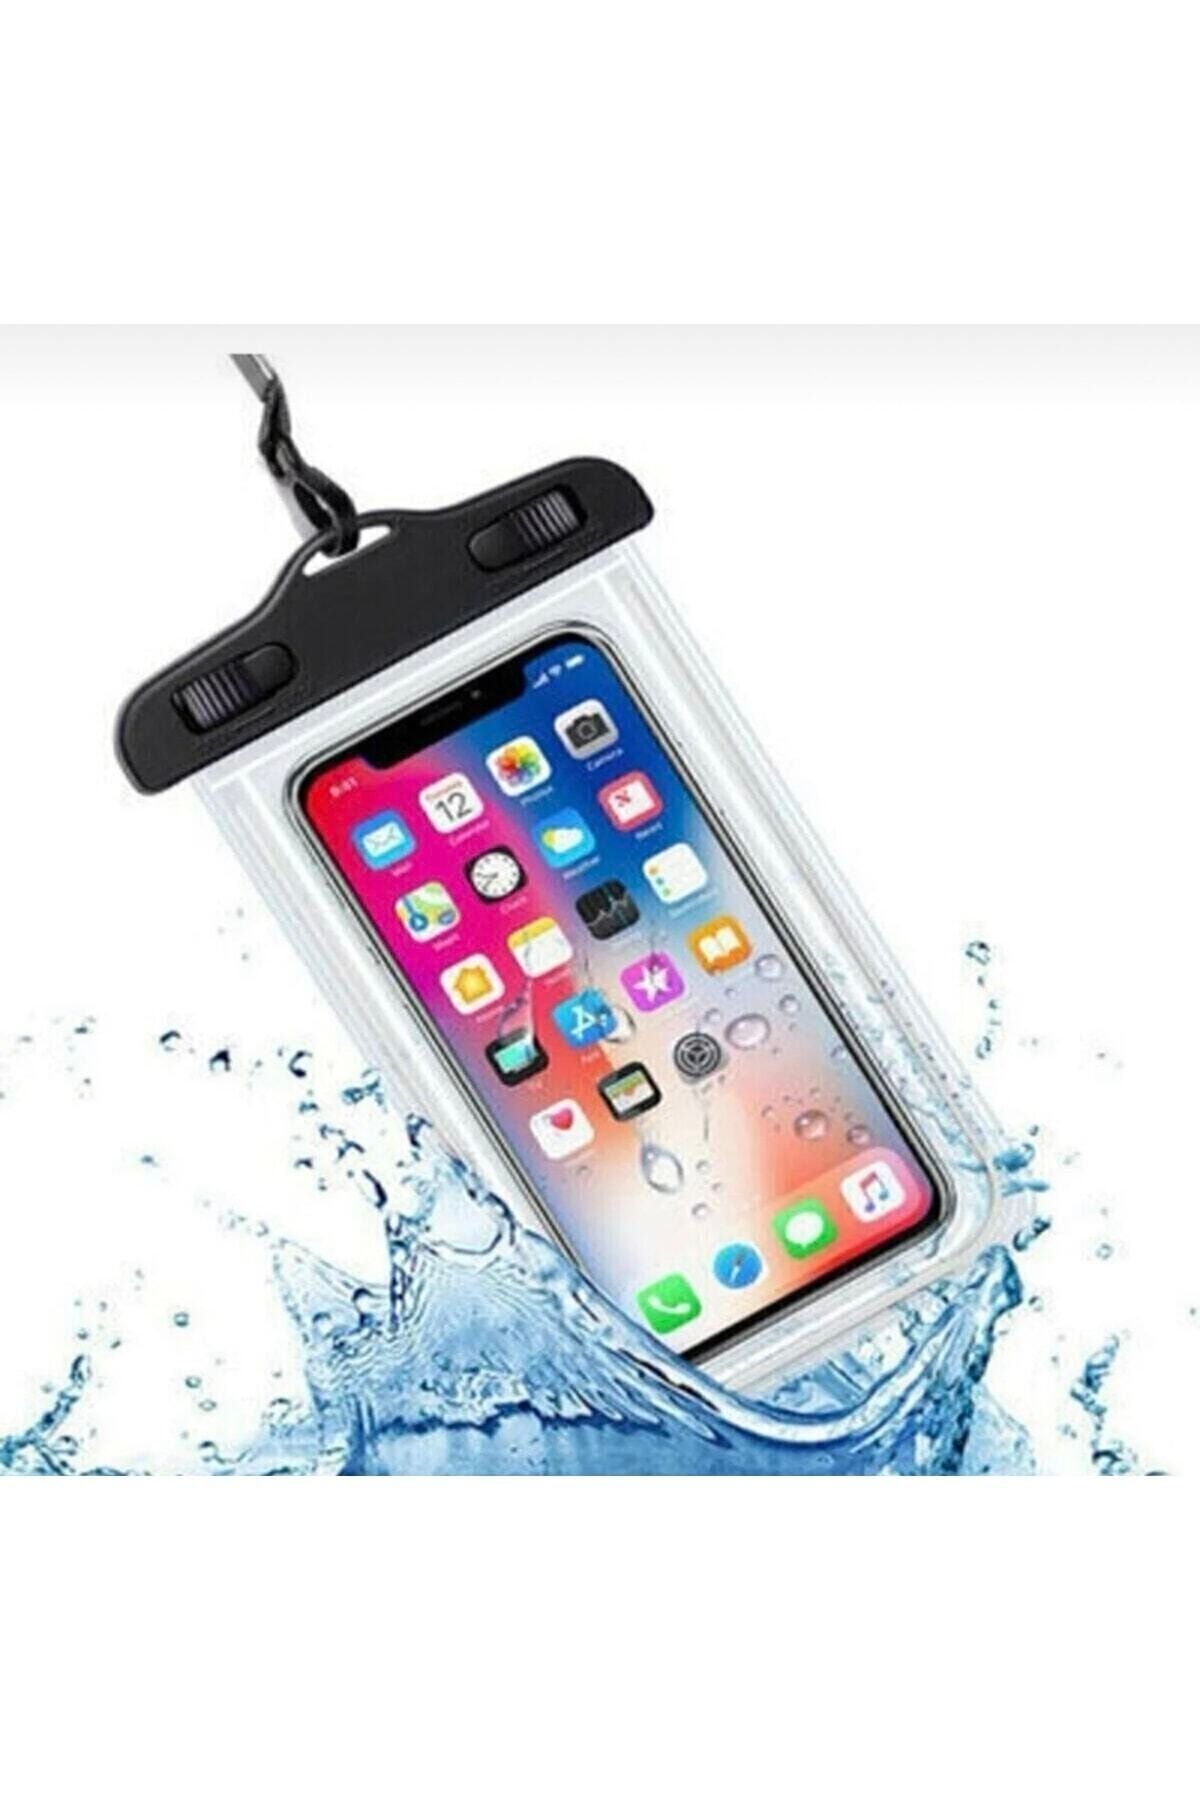 Su Geçirmez Waterproof Telefon Kılıfı Deniz Havuz Altı Için Askı